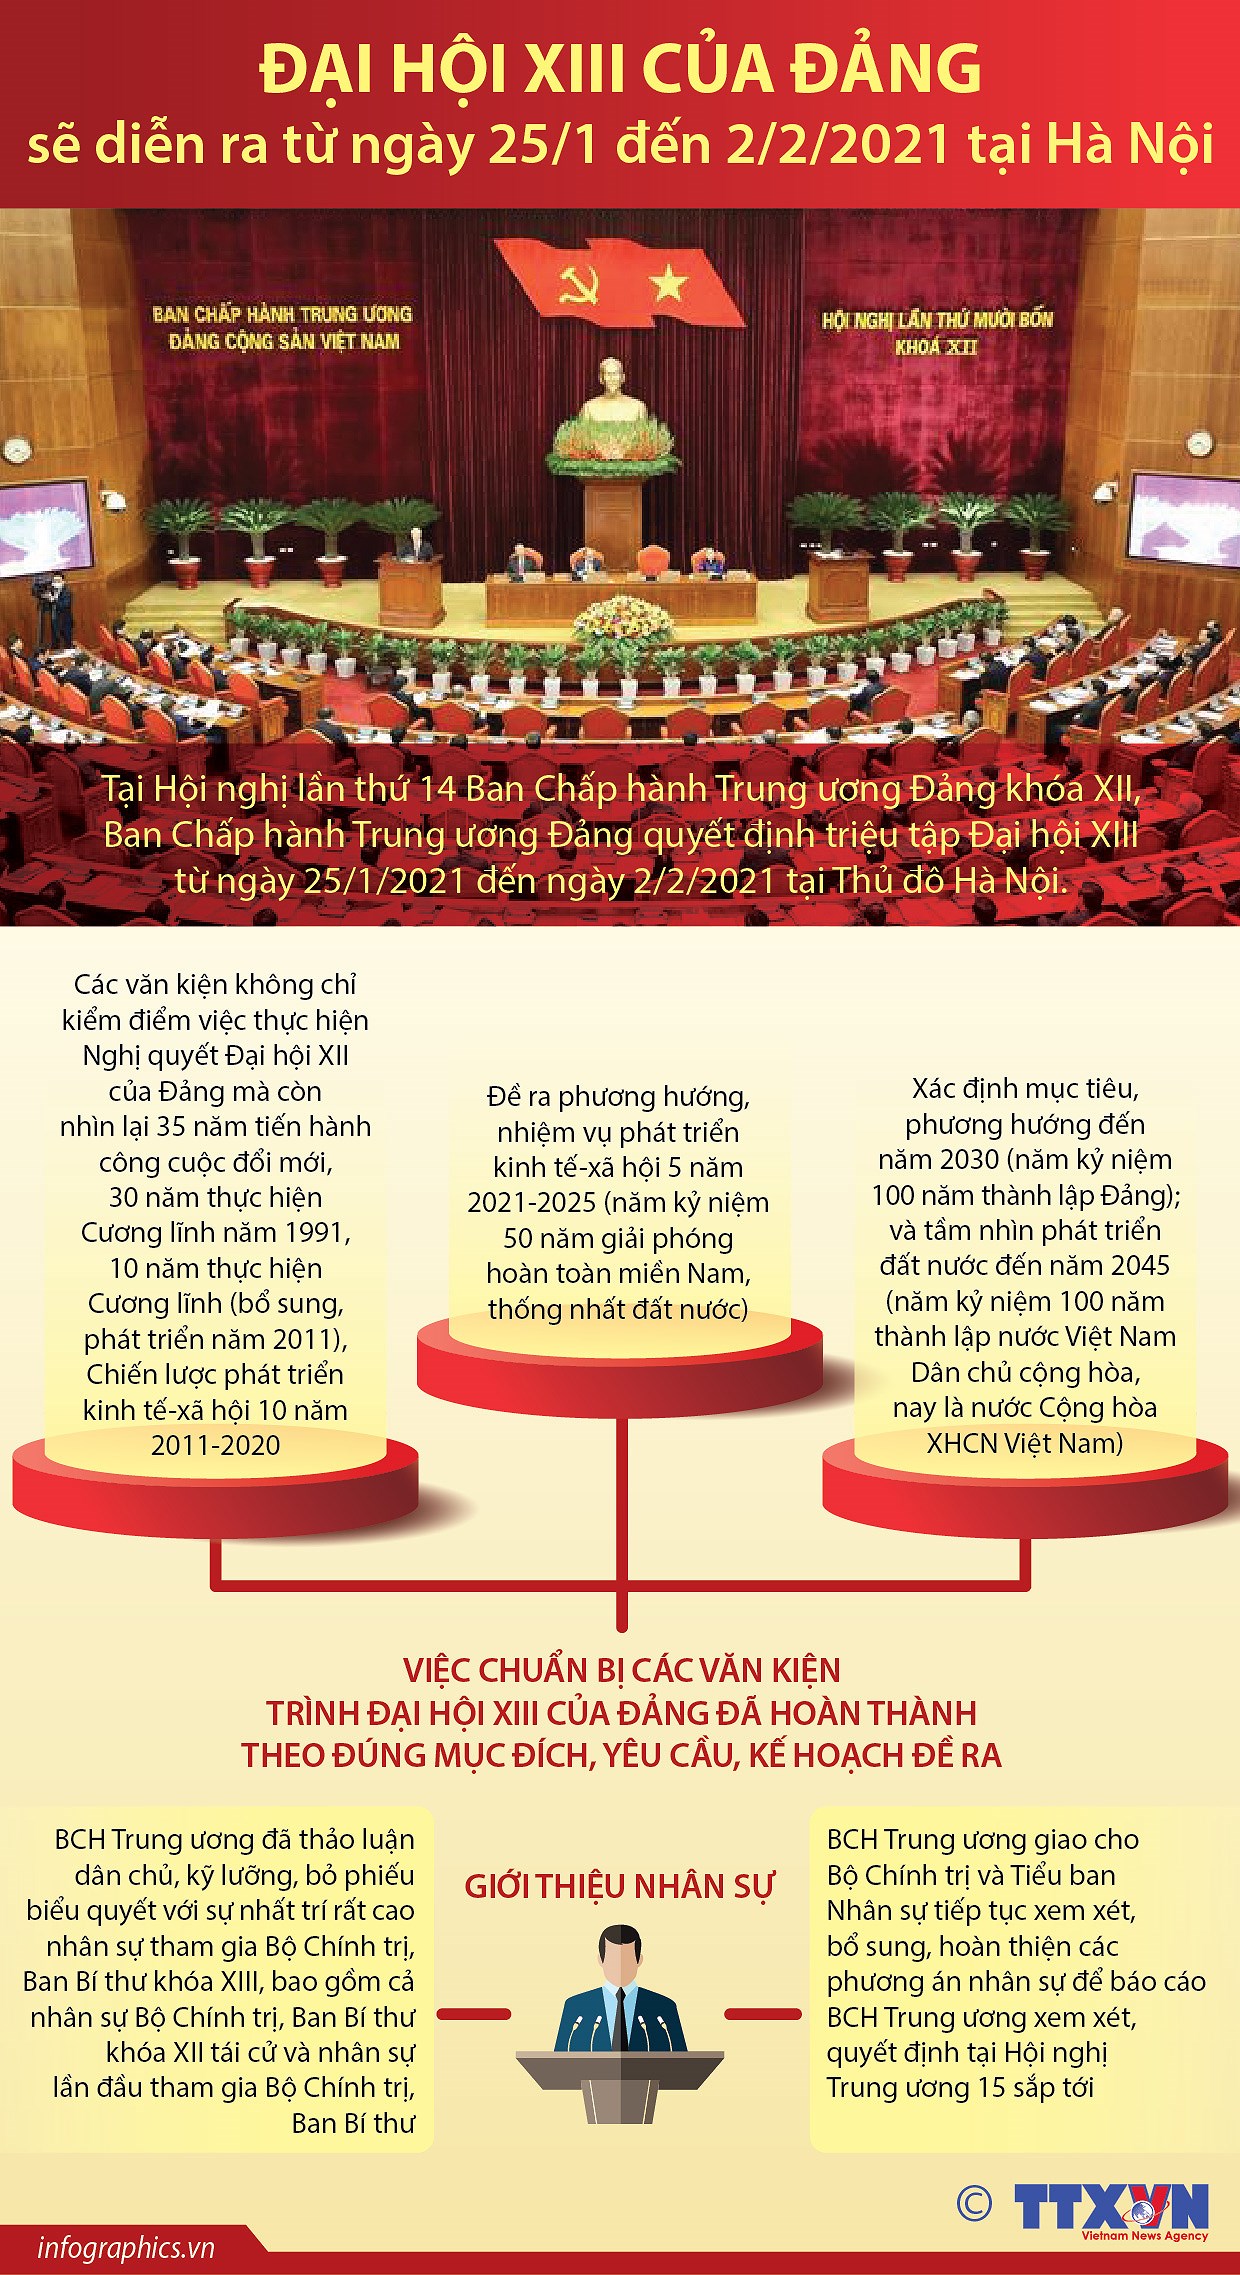 [Infographics] Dai hoi XIII cua Dang se dien ra khi nao? hinh anh 1